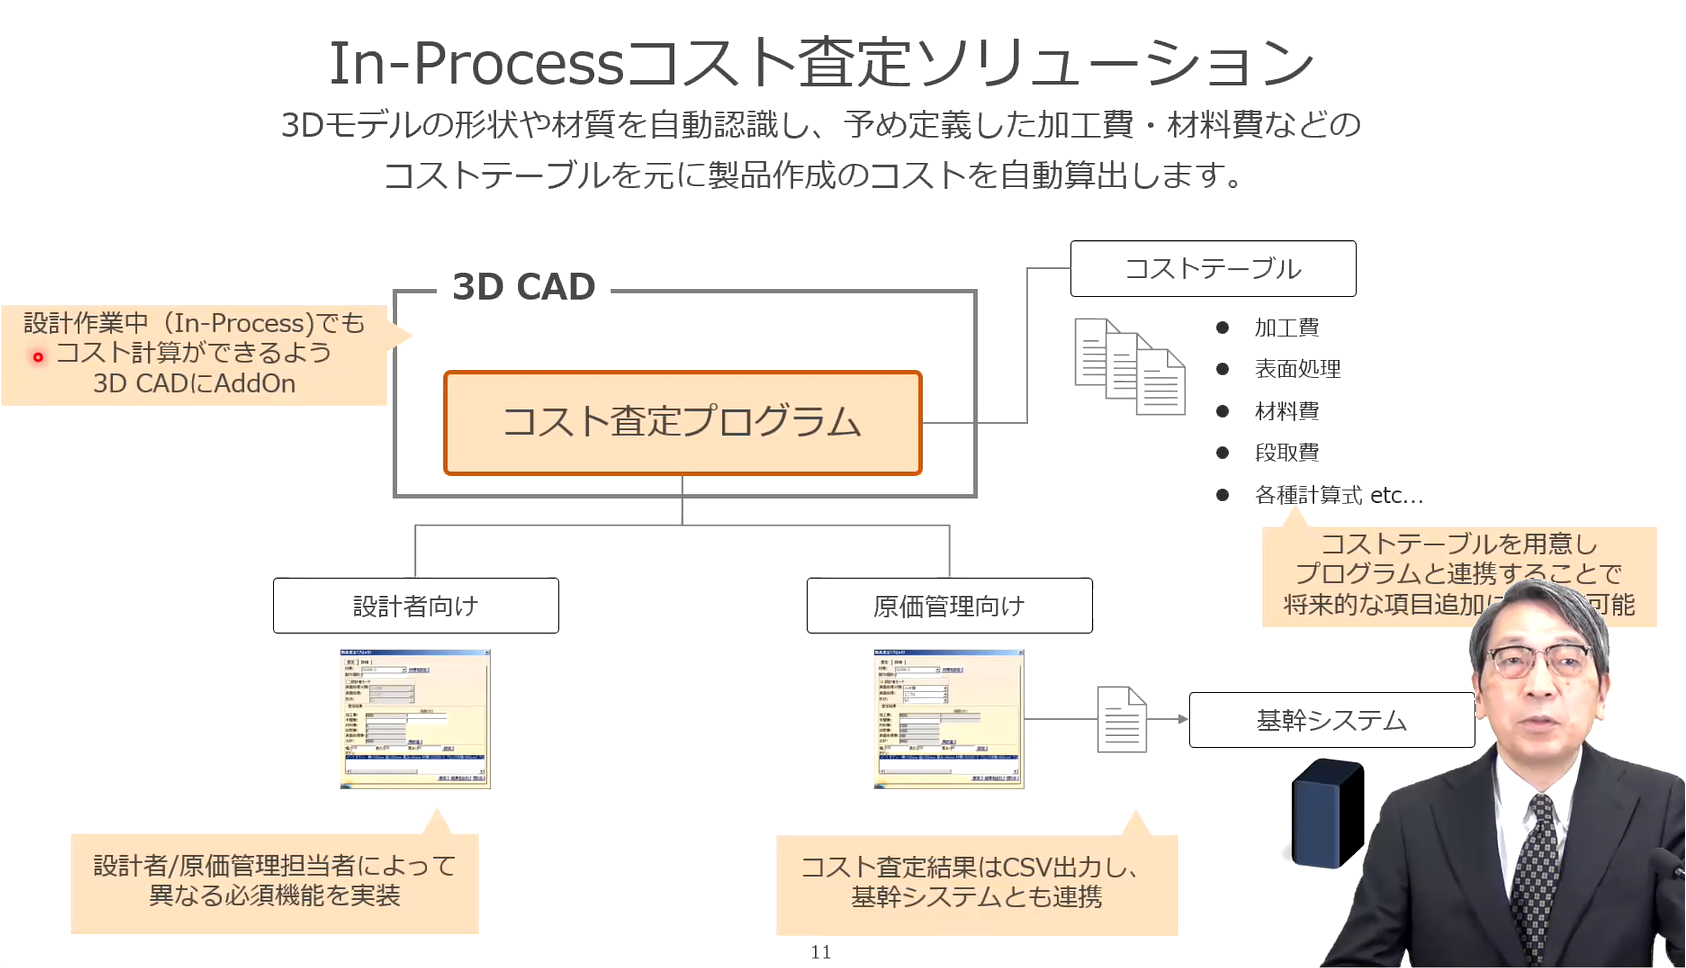 イメージ:お客様事例紹介-3Dモデルを利用したコスト計算自働化によるDX推進